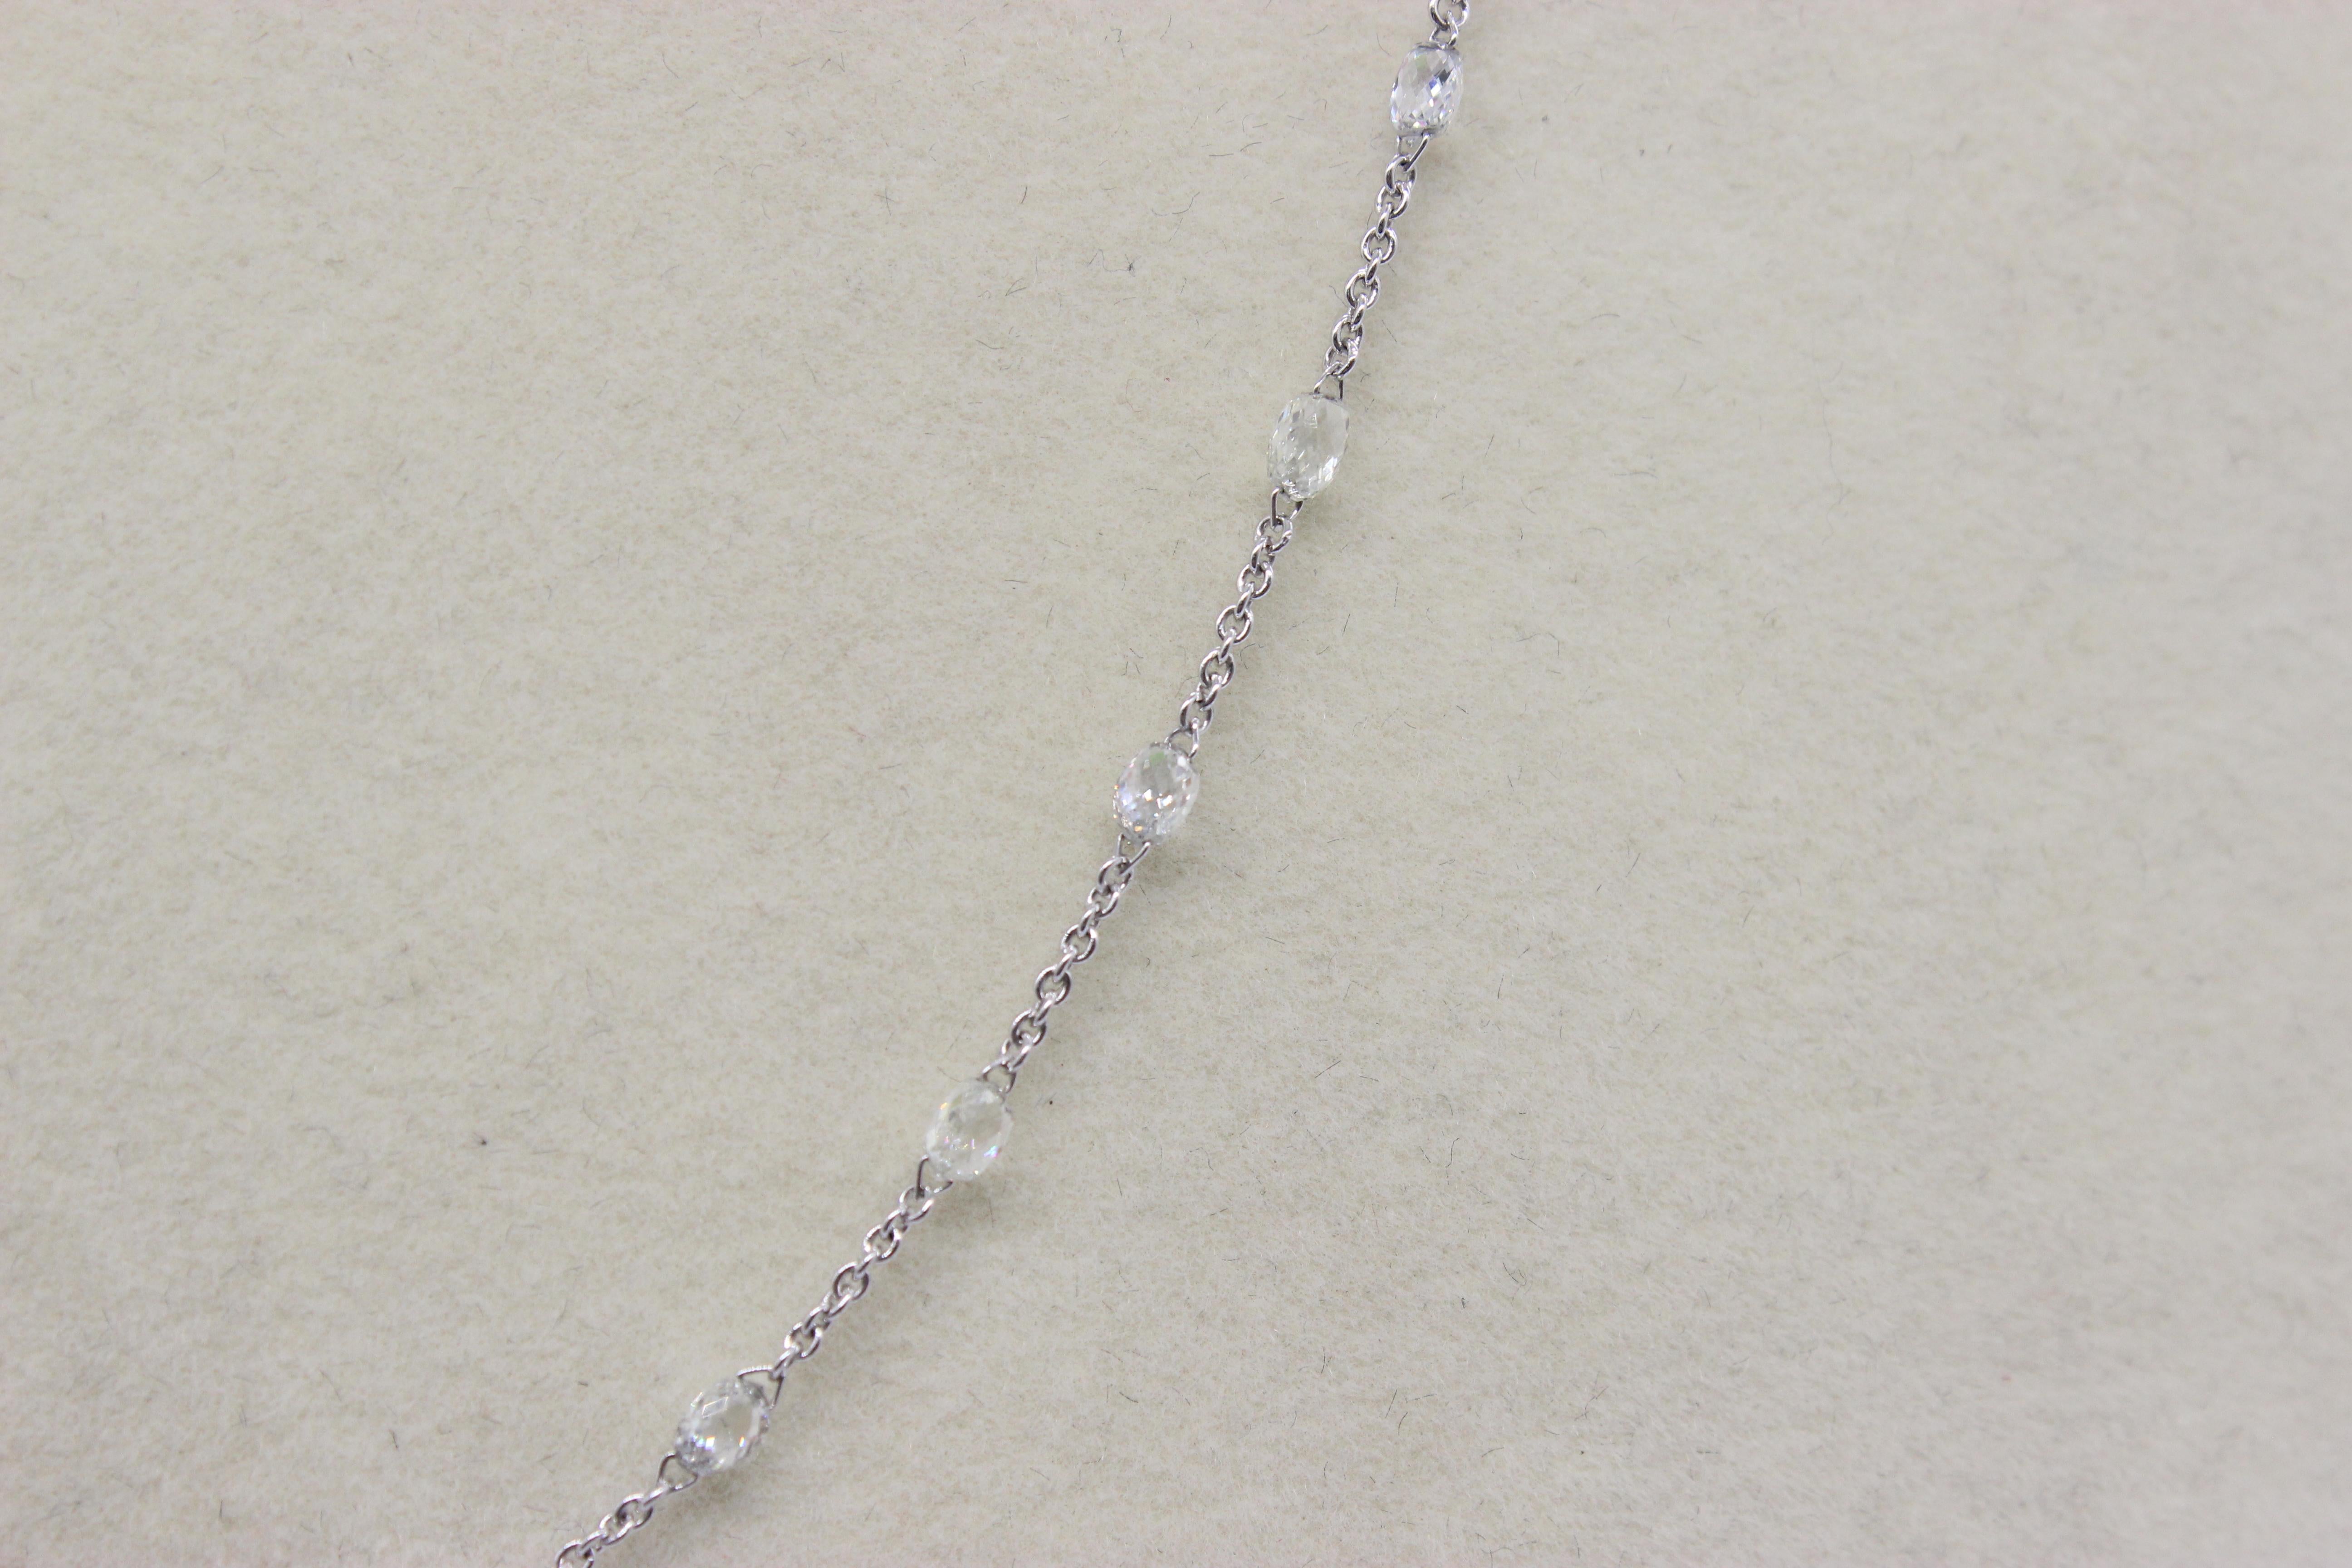 Panim 5.72 Carats Briolette Diamonds 18k White Gold Necklace For Sale 1